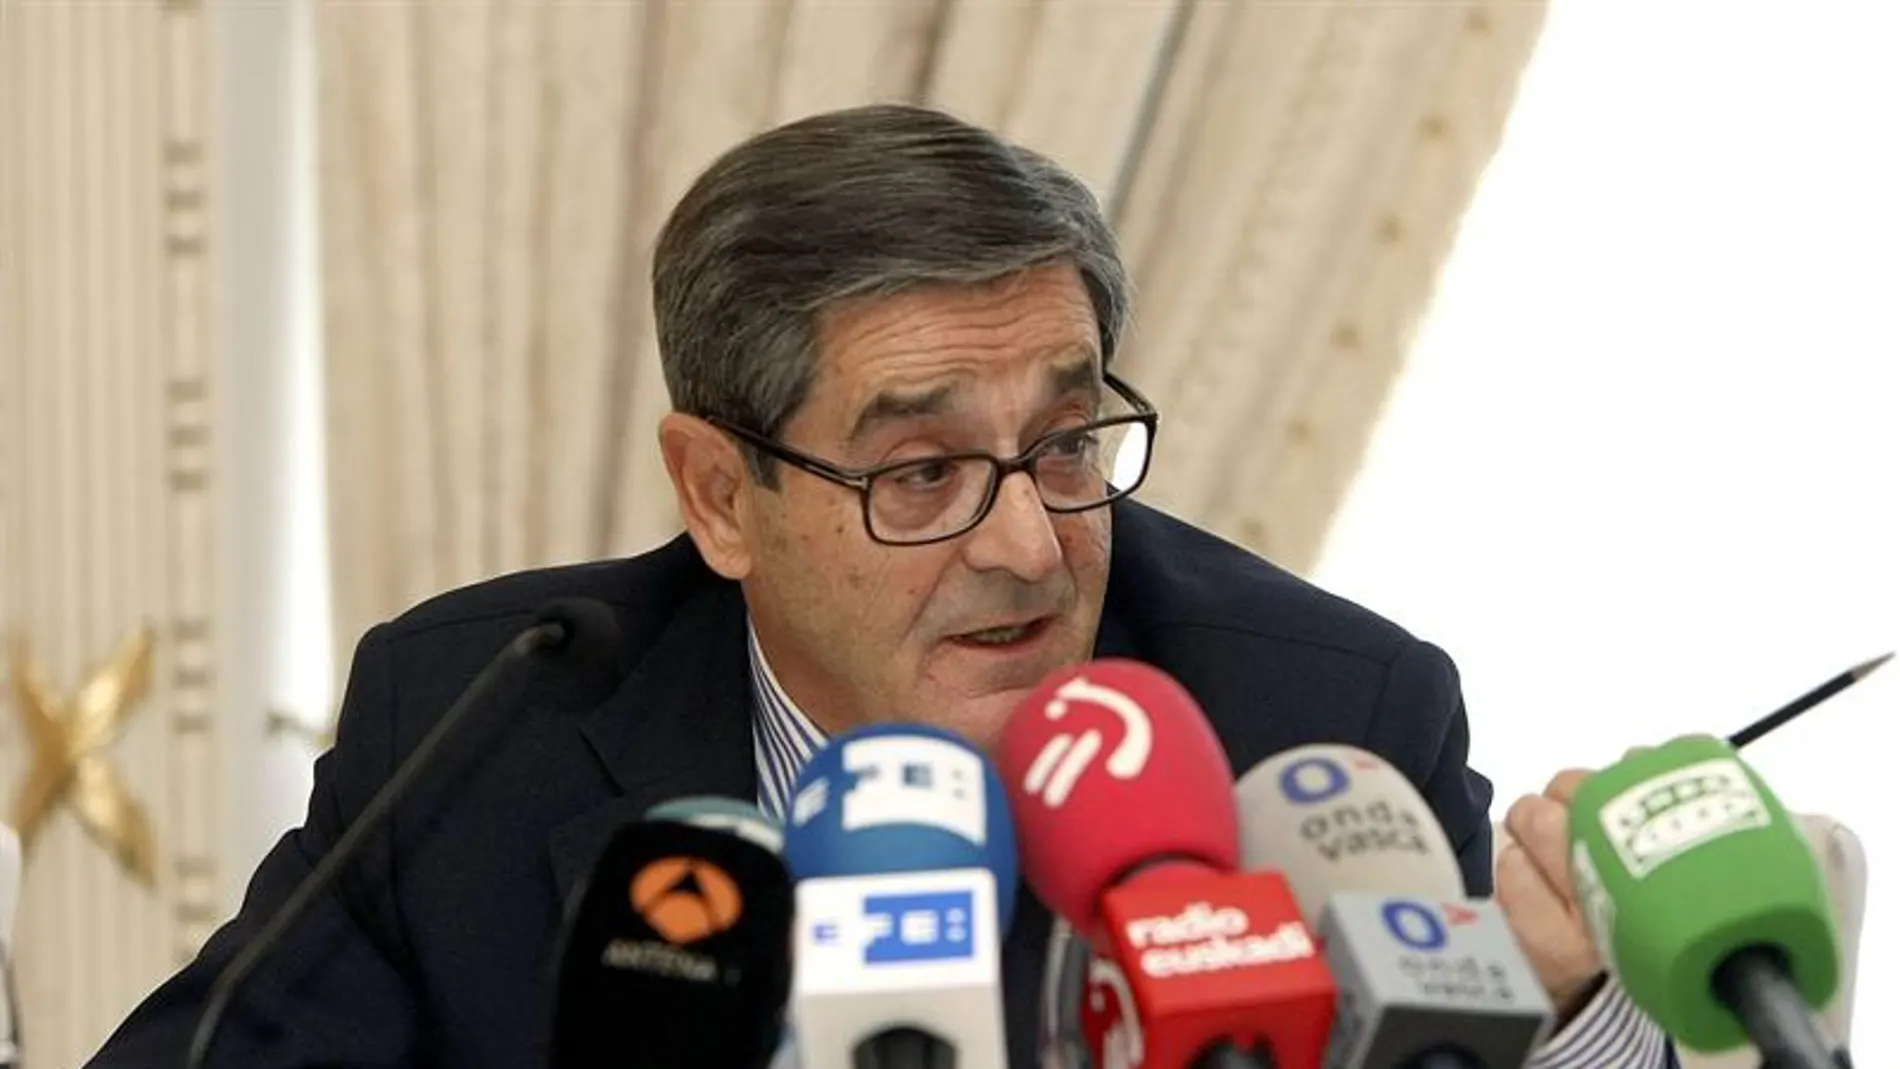 El expresidente de Kutxabank, Mario Fernández